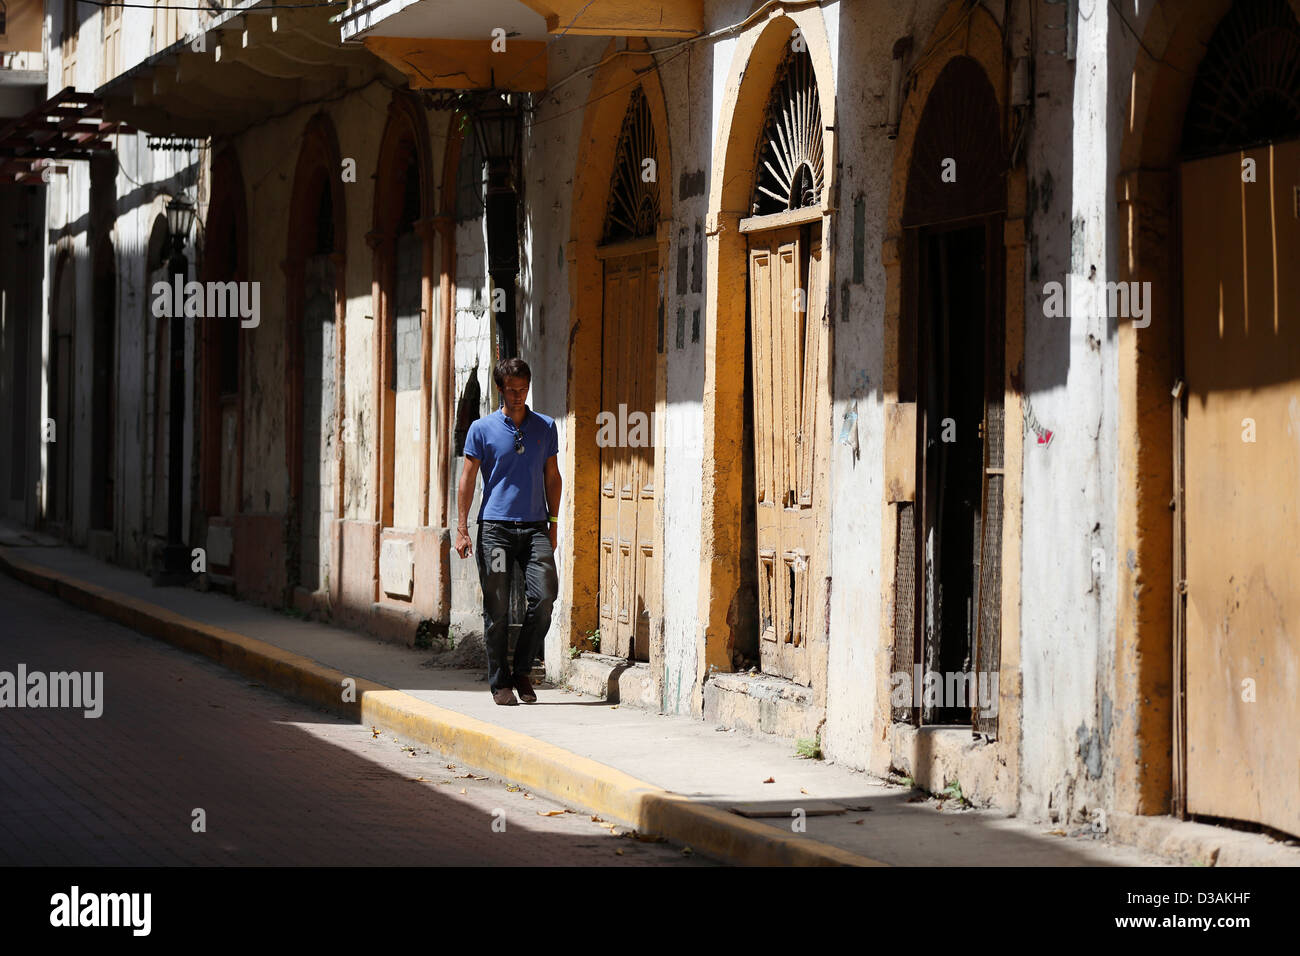 street scene, Casco Viejo, Panama City, Panama Stock Photo